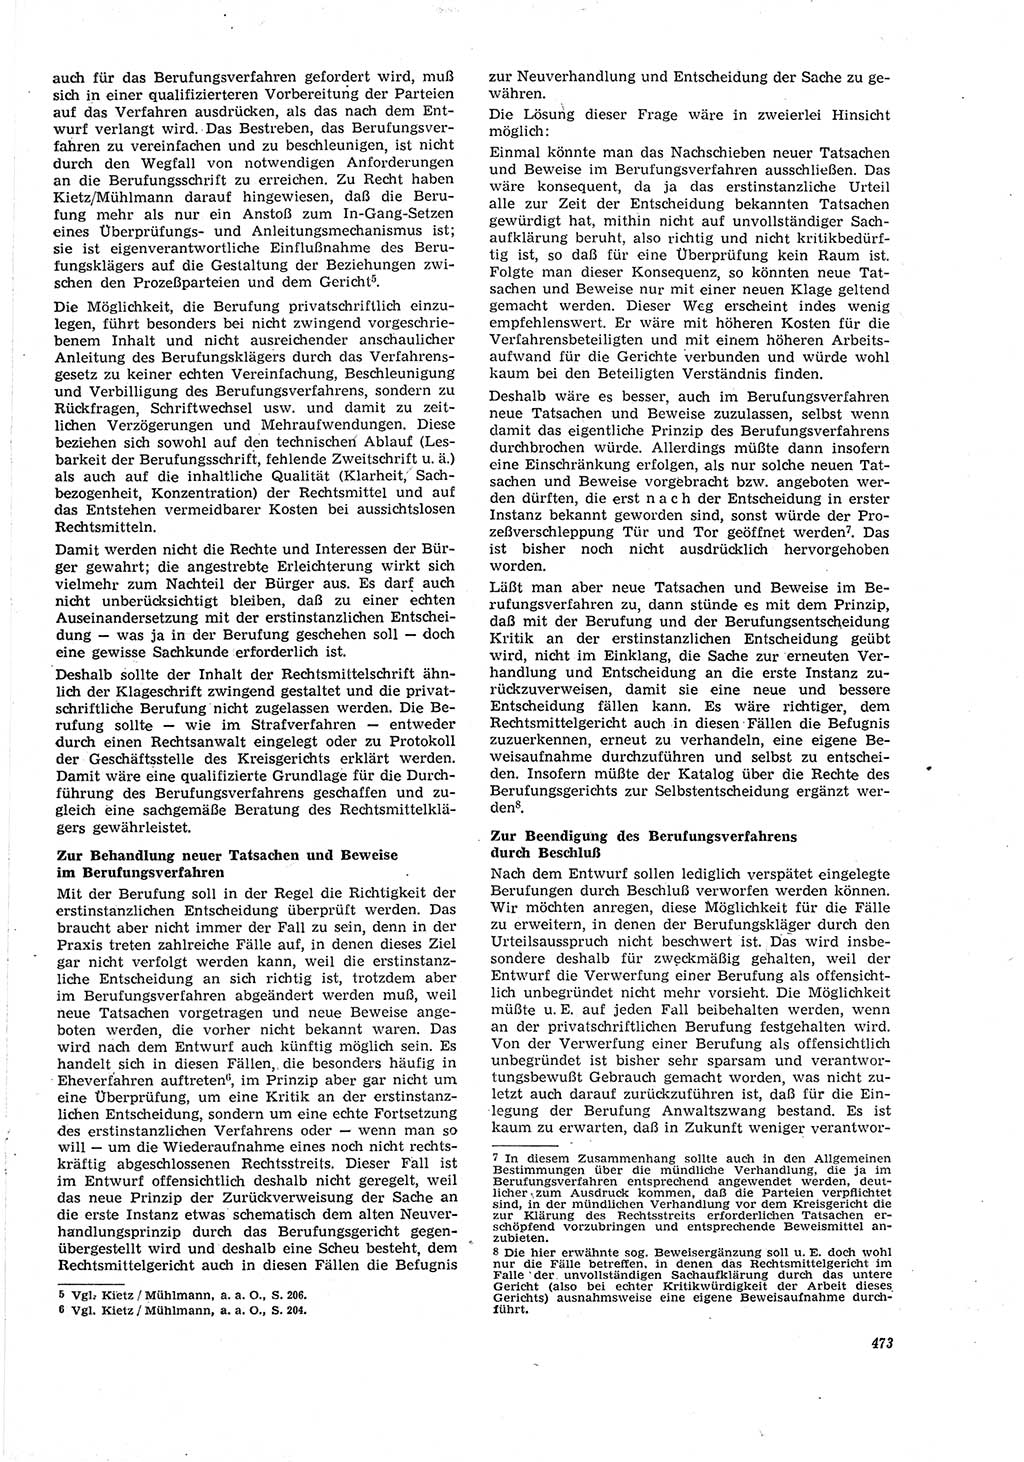 Neue Justiz (NJ), Zeitschrift für Recht und Rechtswissenschaft [Deutsche Demokratische Republik (DDR)], 21. Jahrgang 1967, Seite 473 (NJ DDR 1967, S. 473)